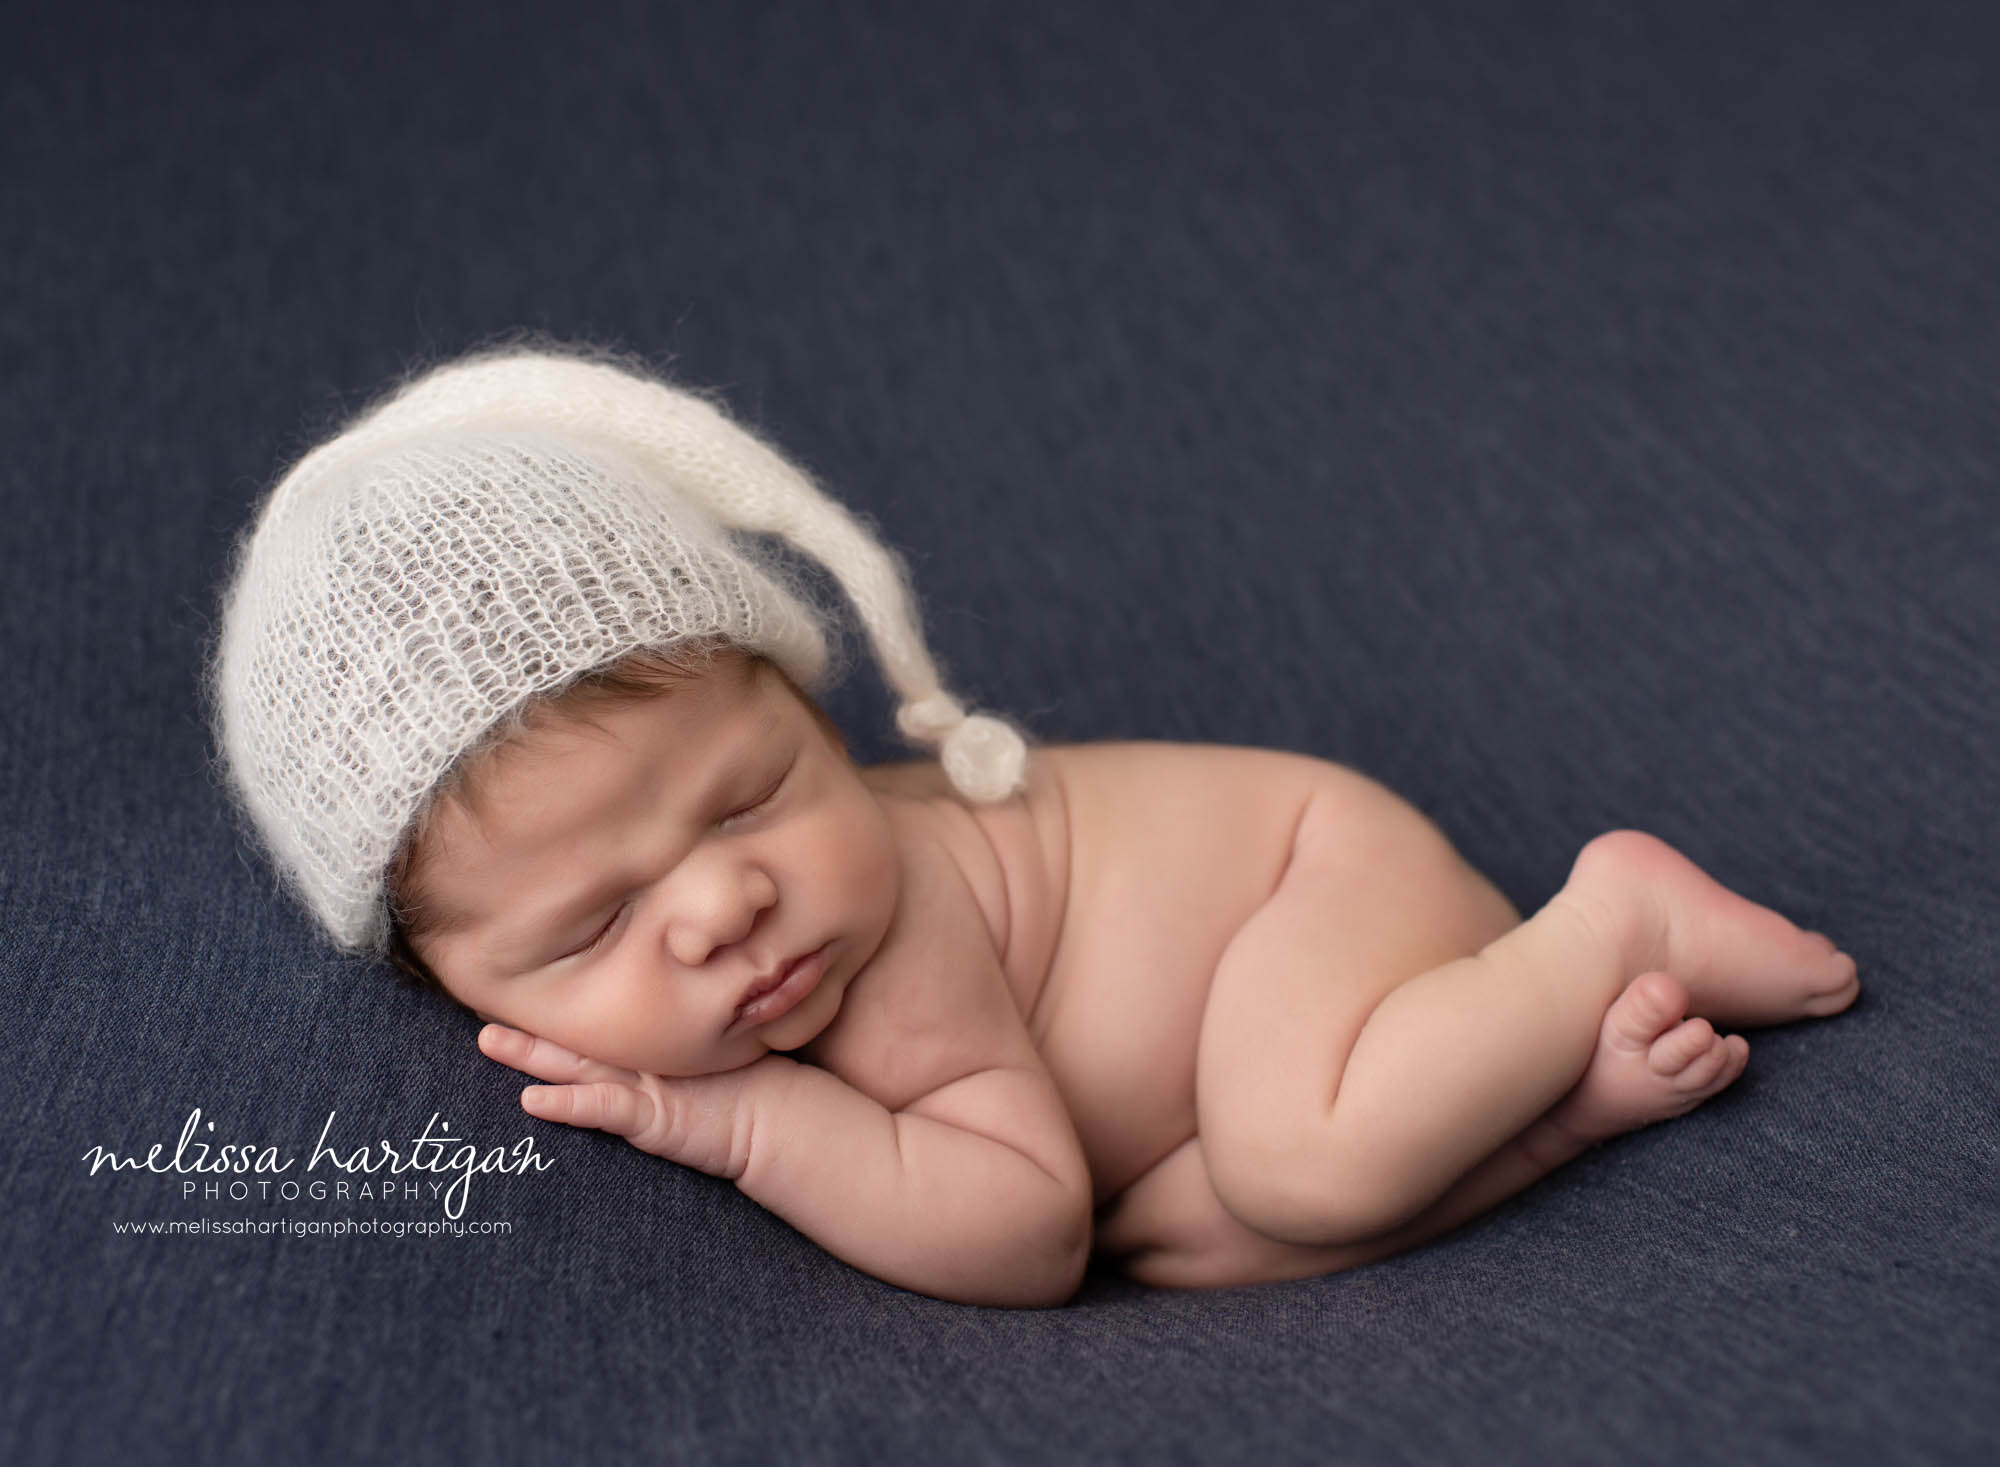 newbonr baby boy posed on side sleeping wearing knitted sleepy cap